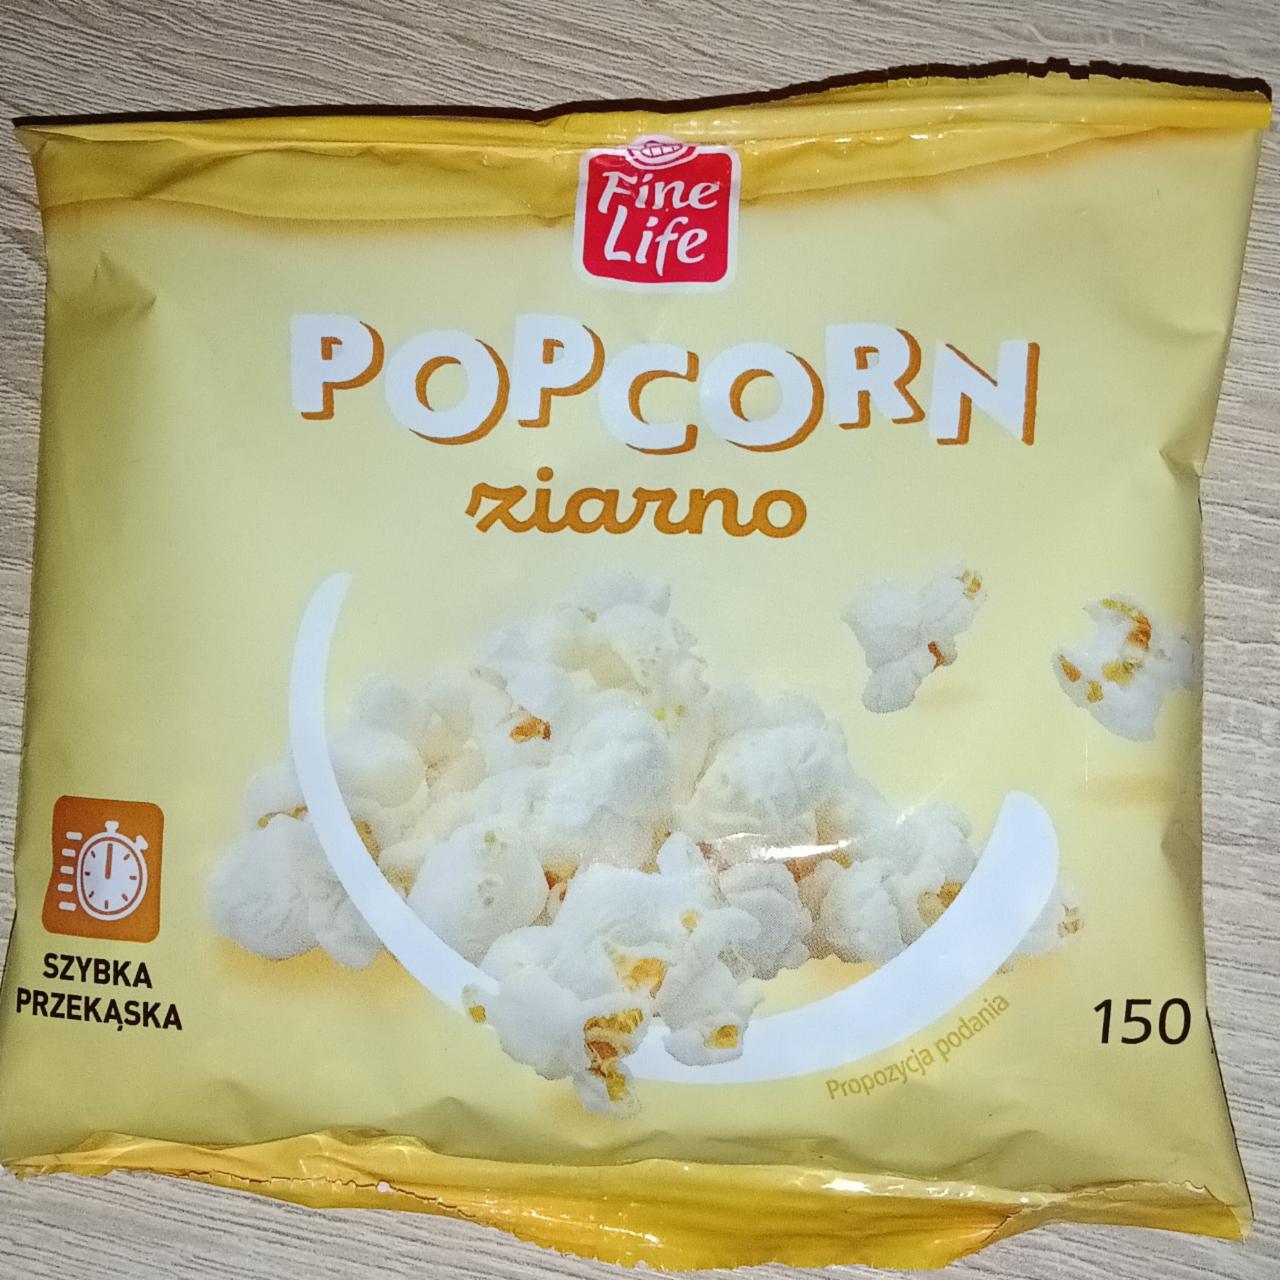 Zdjęcia - Popcorn ziarno Fine Life